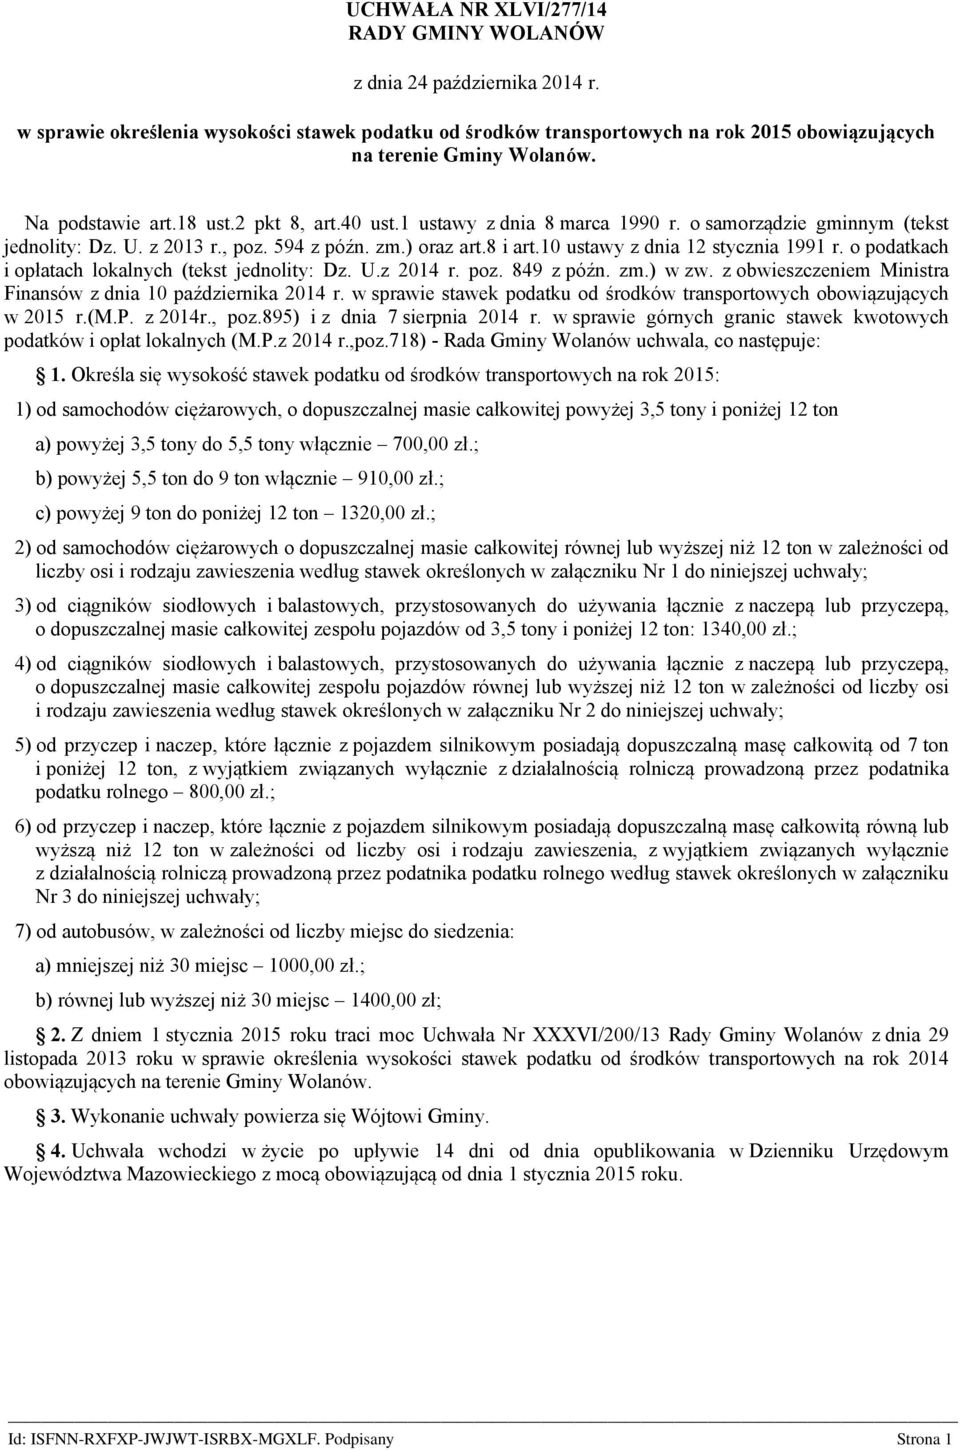 10 ustawy z dnia 12 stycznia 1991 r. o podatkach i opłatach lokalnych (tekst jednolity: Dz. U.z 2014 r. poz. 849 z późn. zm.) w zw. z obwieszczeniem Ministra Finansów z dnia 10 października 2014 r.